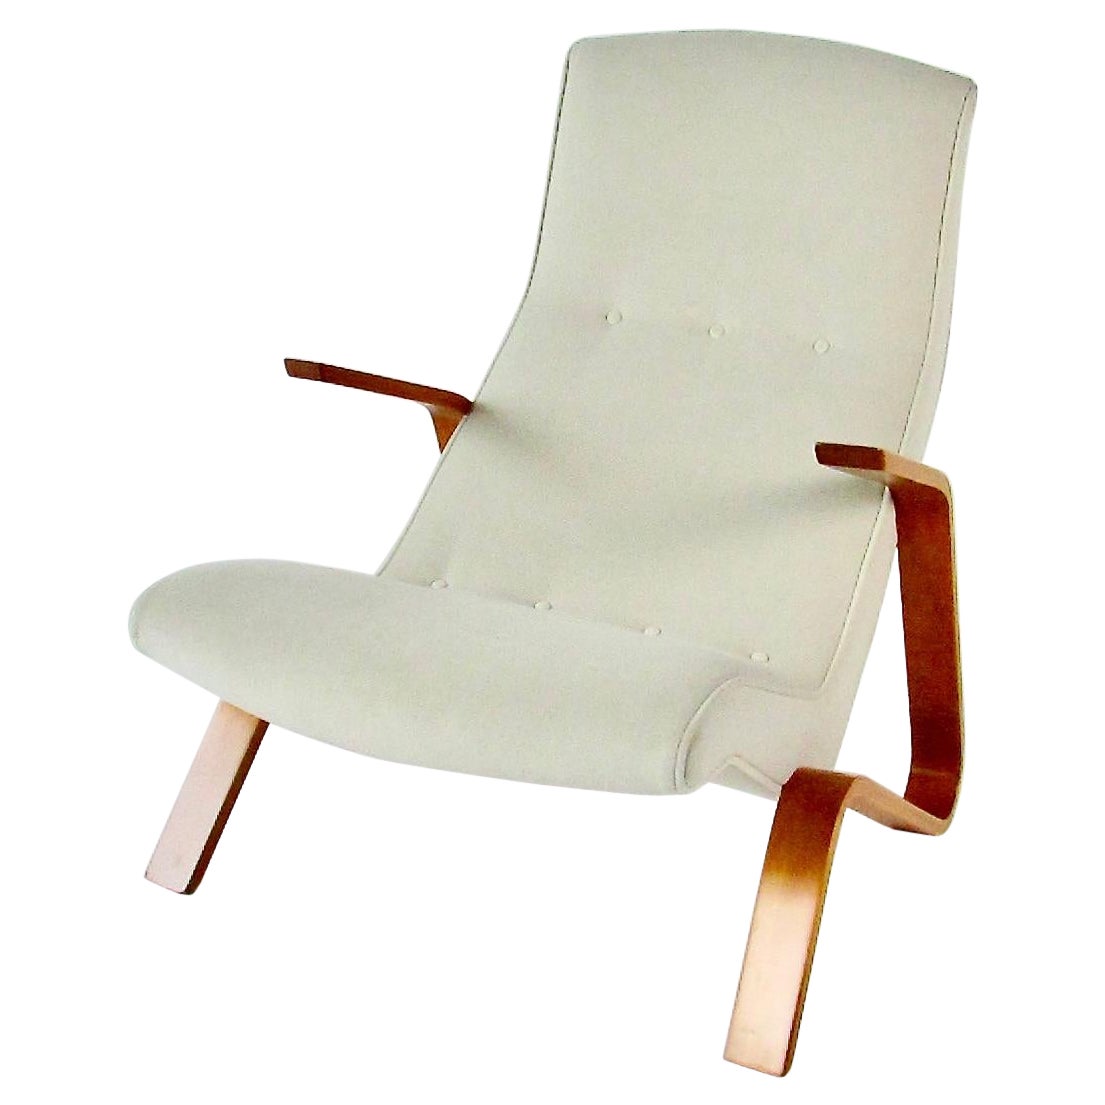 Ursprünglich restaurierter Grasshopper-Stuhl aus der frühen Produktion von Eero Saarinen für Knoll